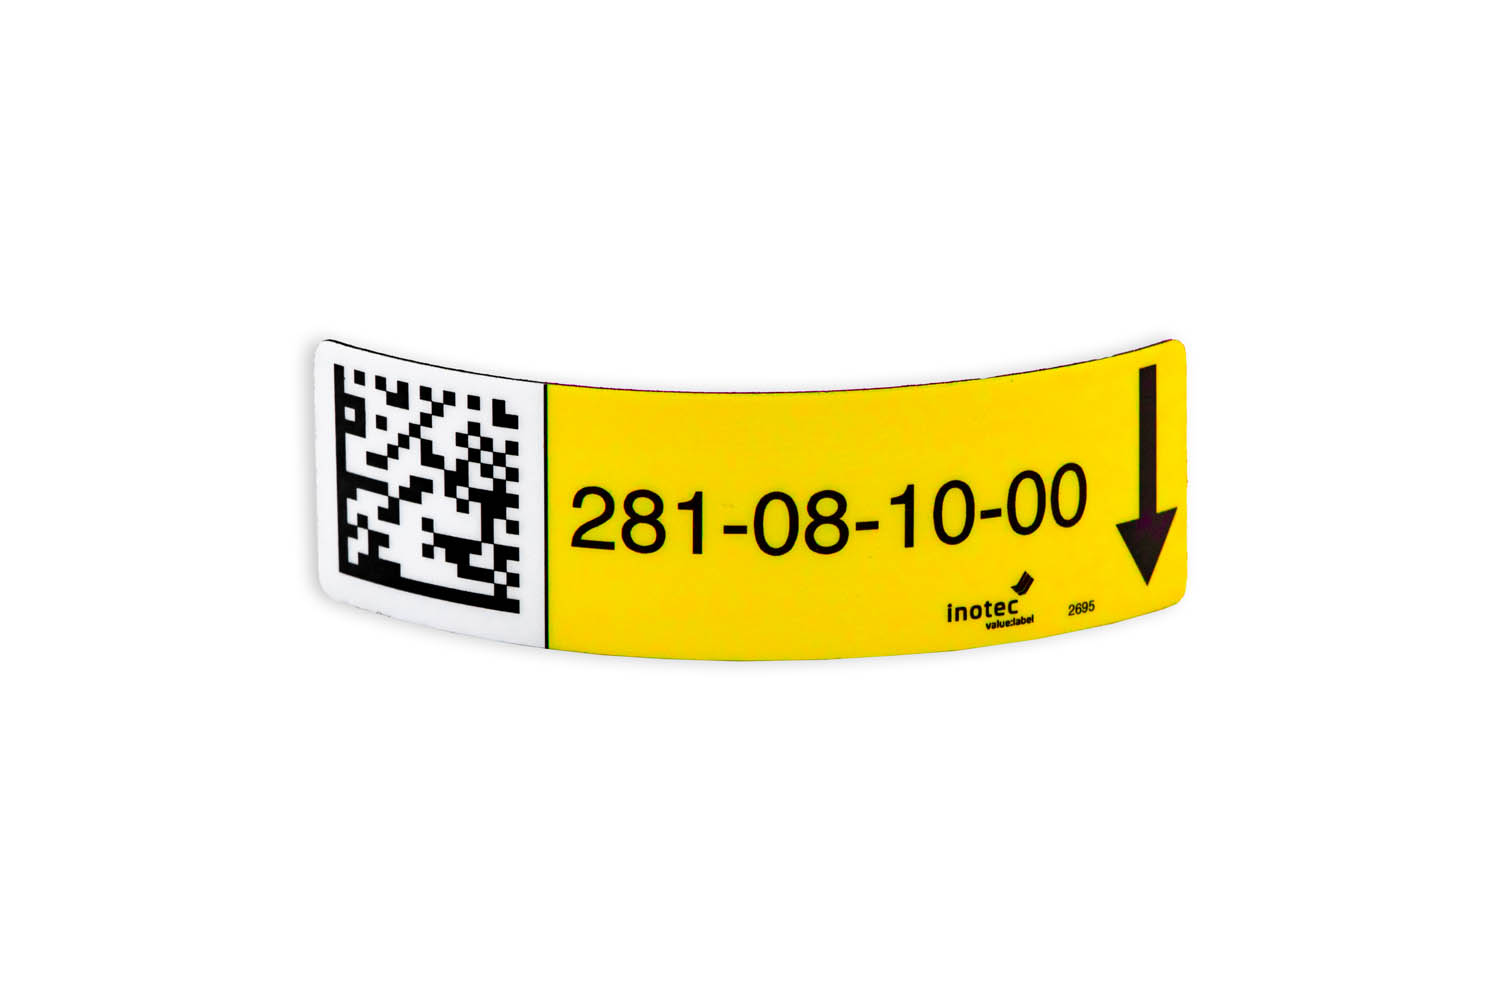 Bild von inotec Diomagnetic Etikett in gelb aus Magnetfolie